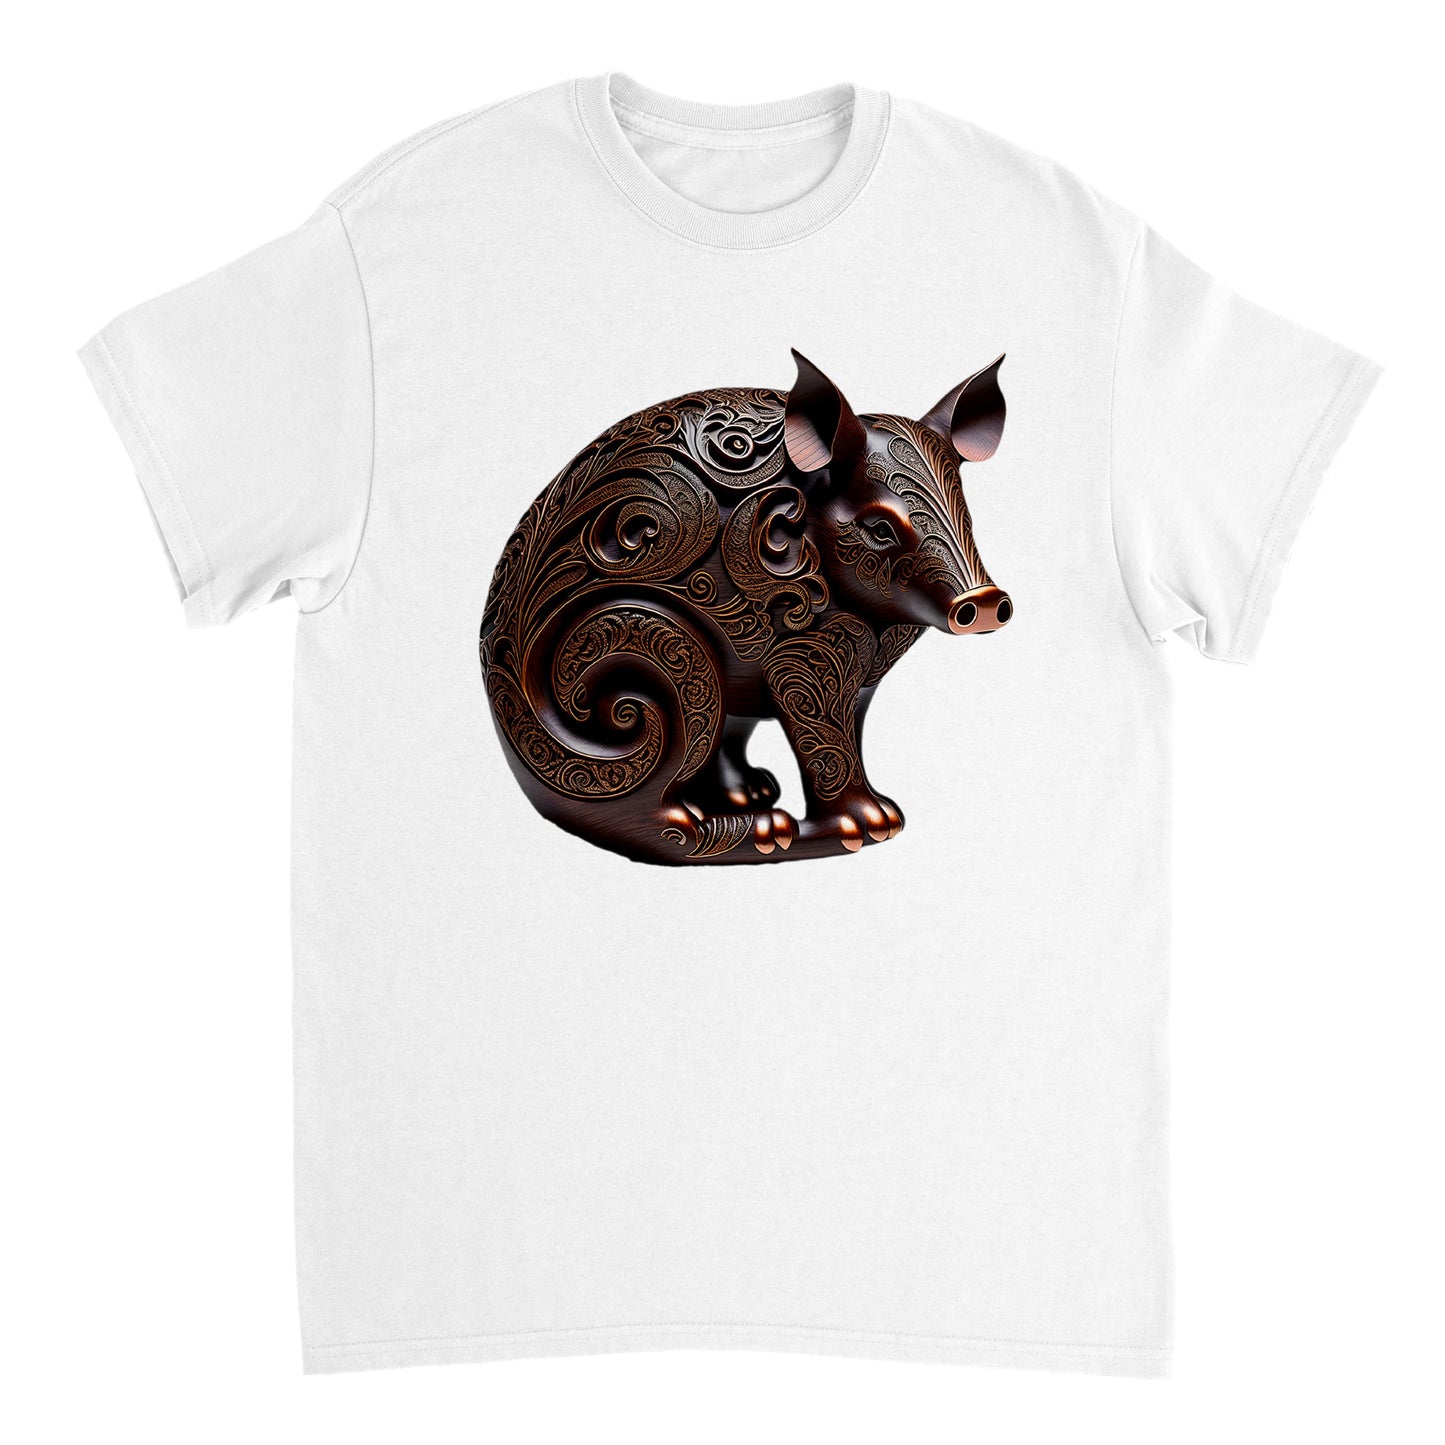 3D Wooden Animal Art - Heavyweight Unisex Crewneck T-shirt 24